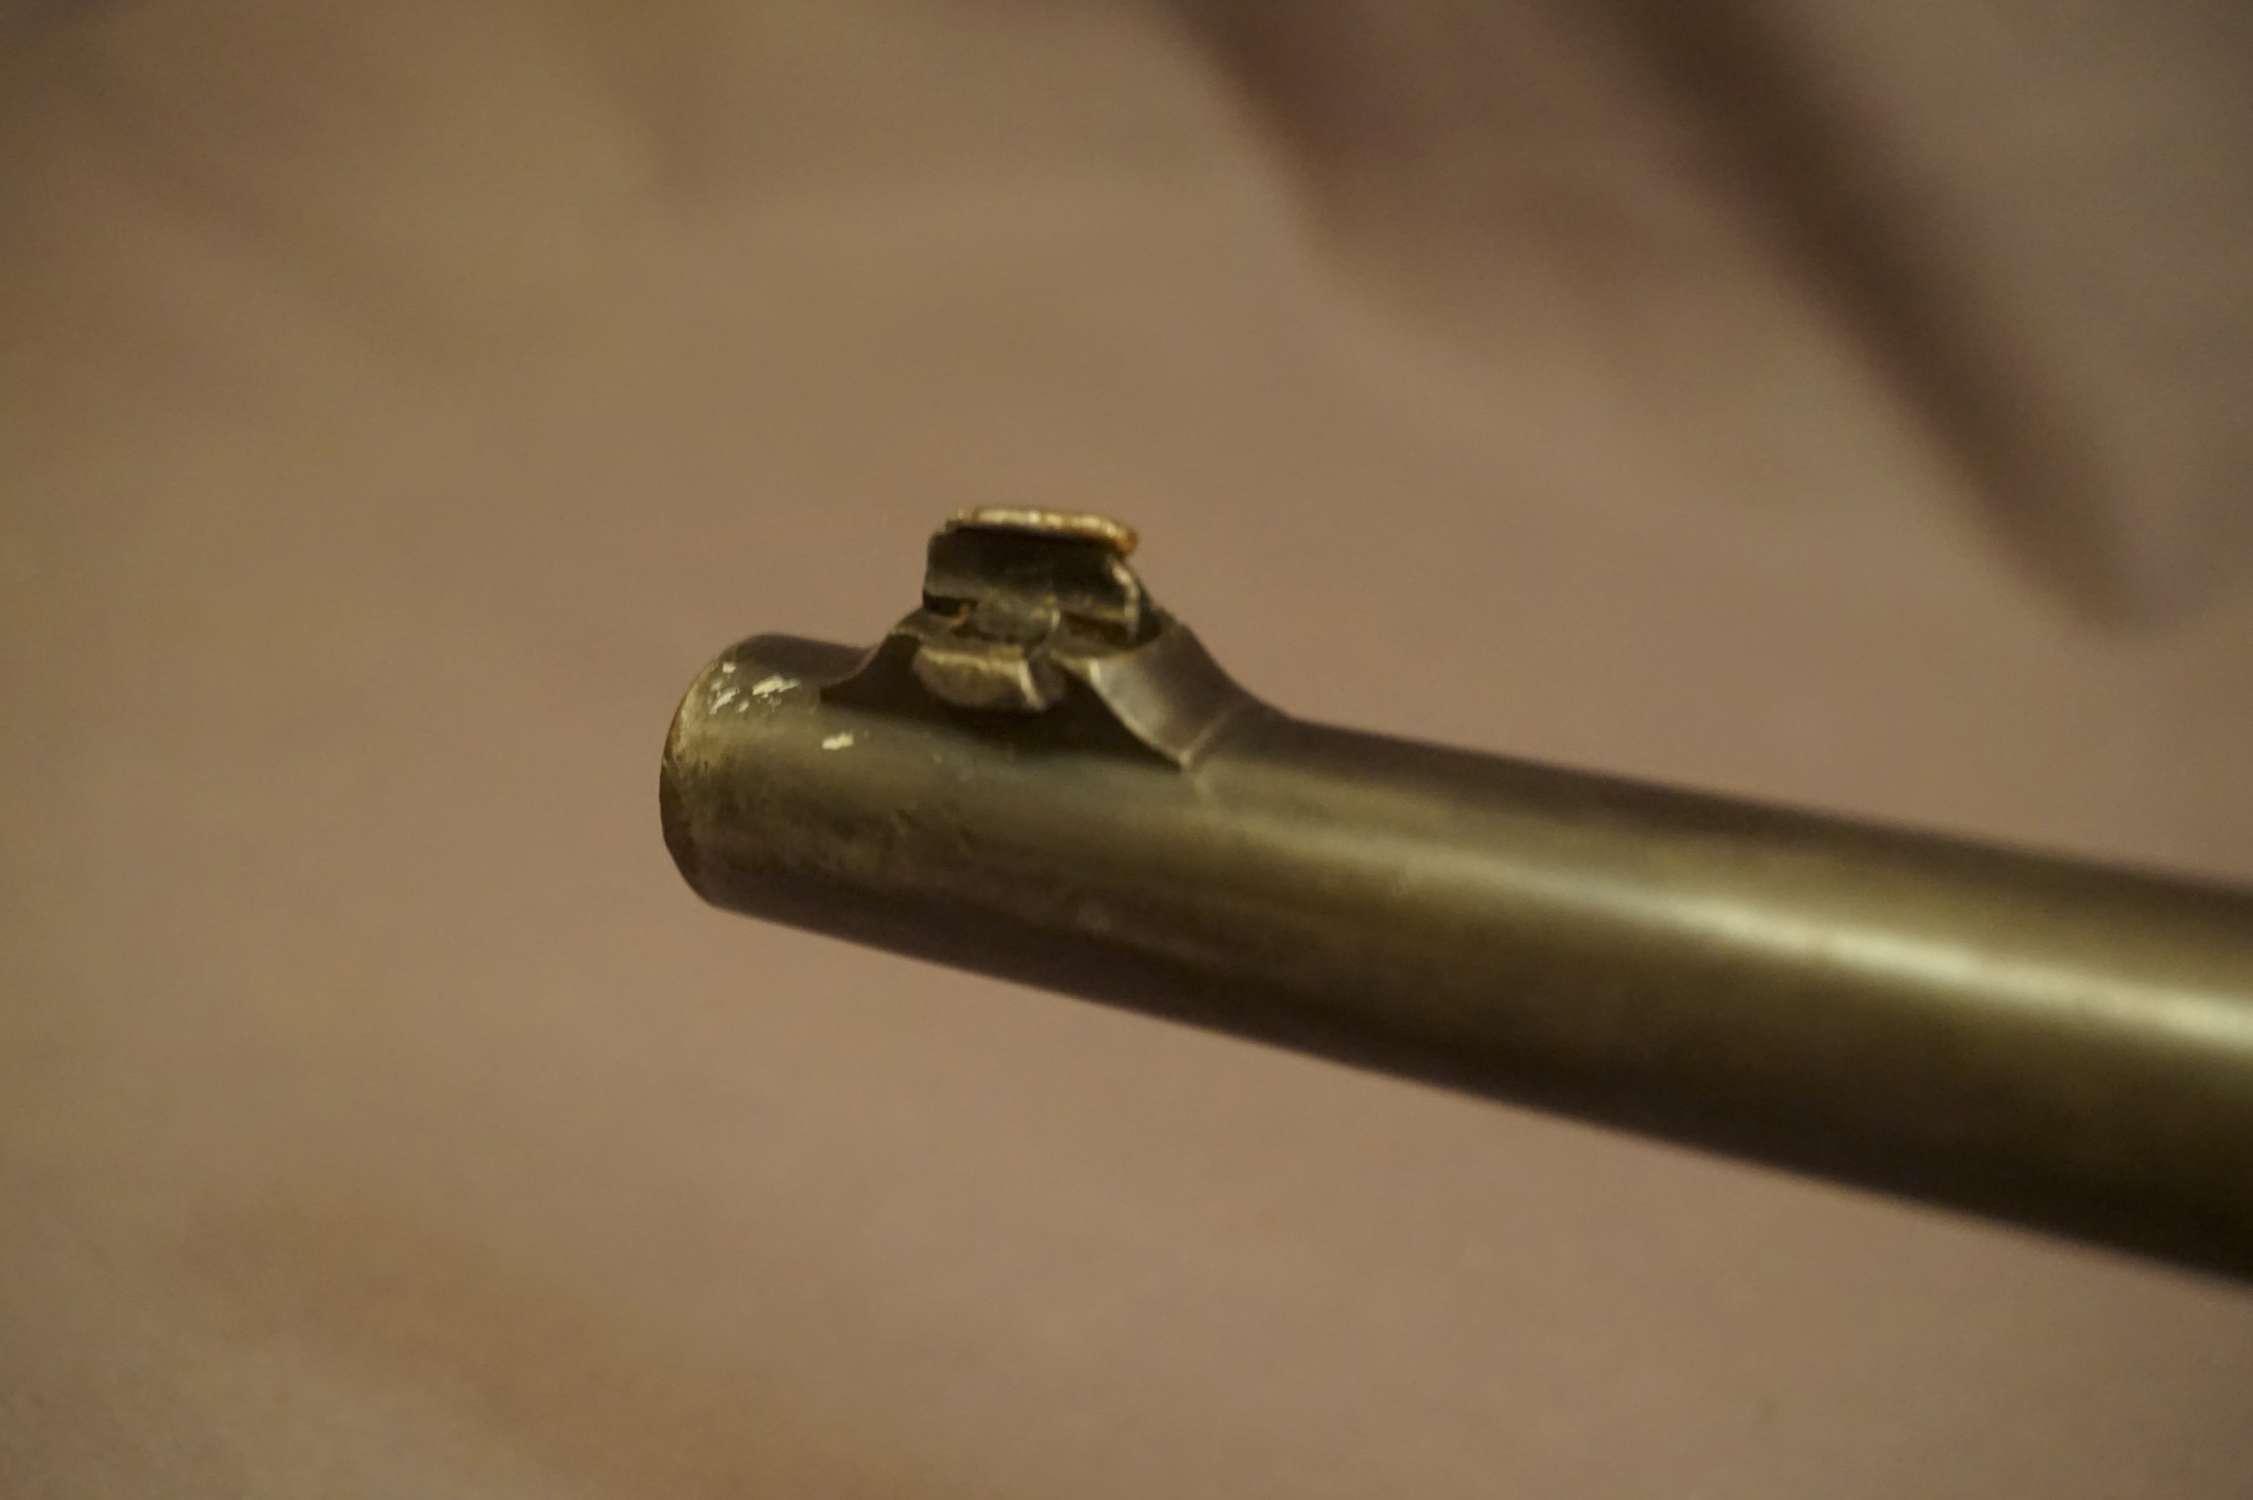 Winchester M. 1895 .30-06 L/A Rifle